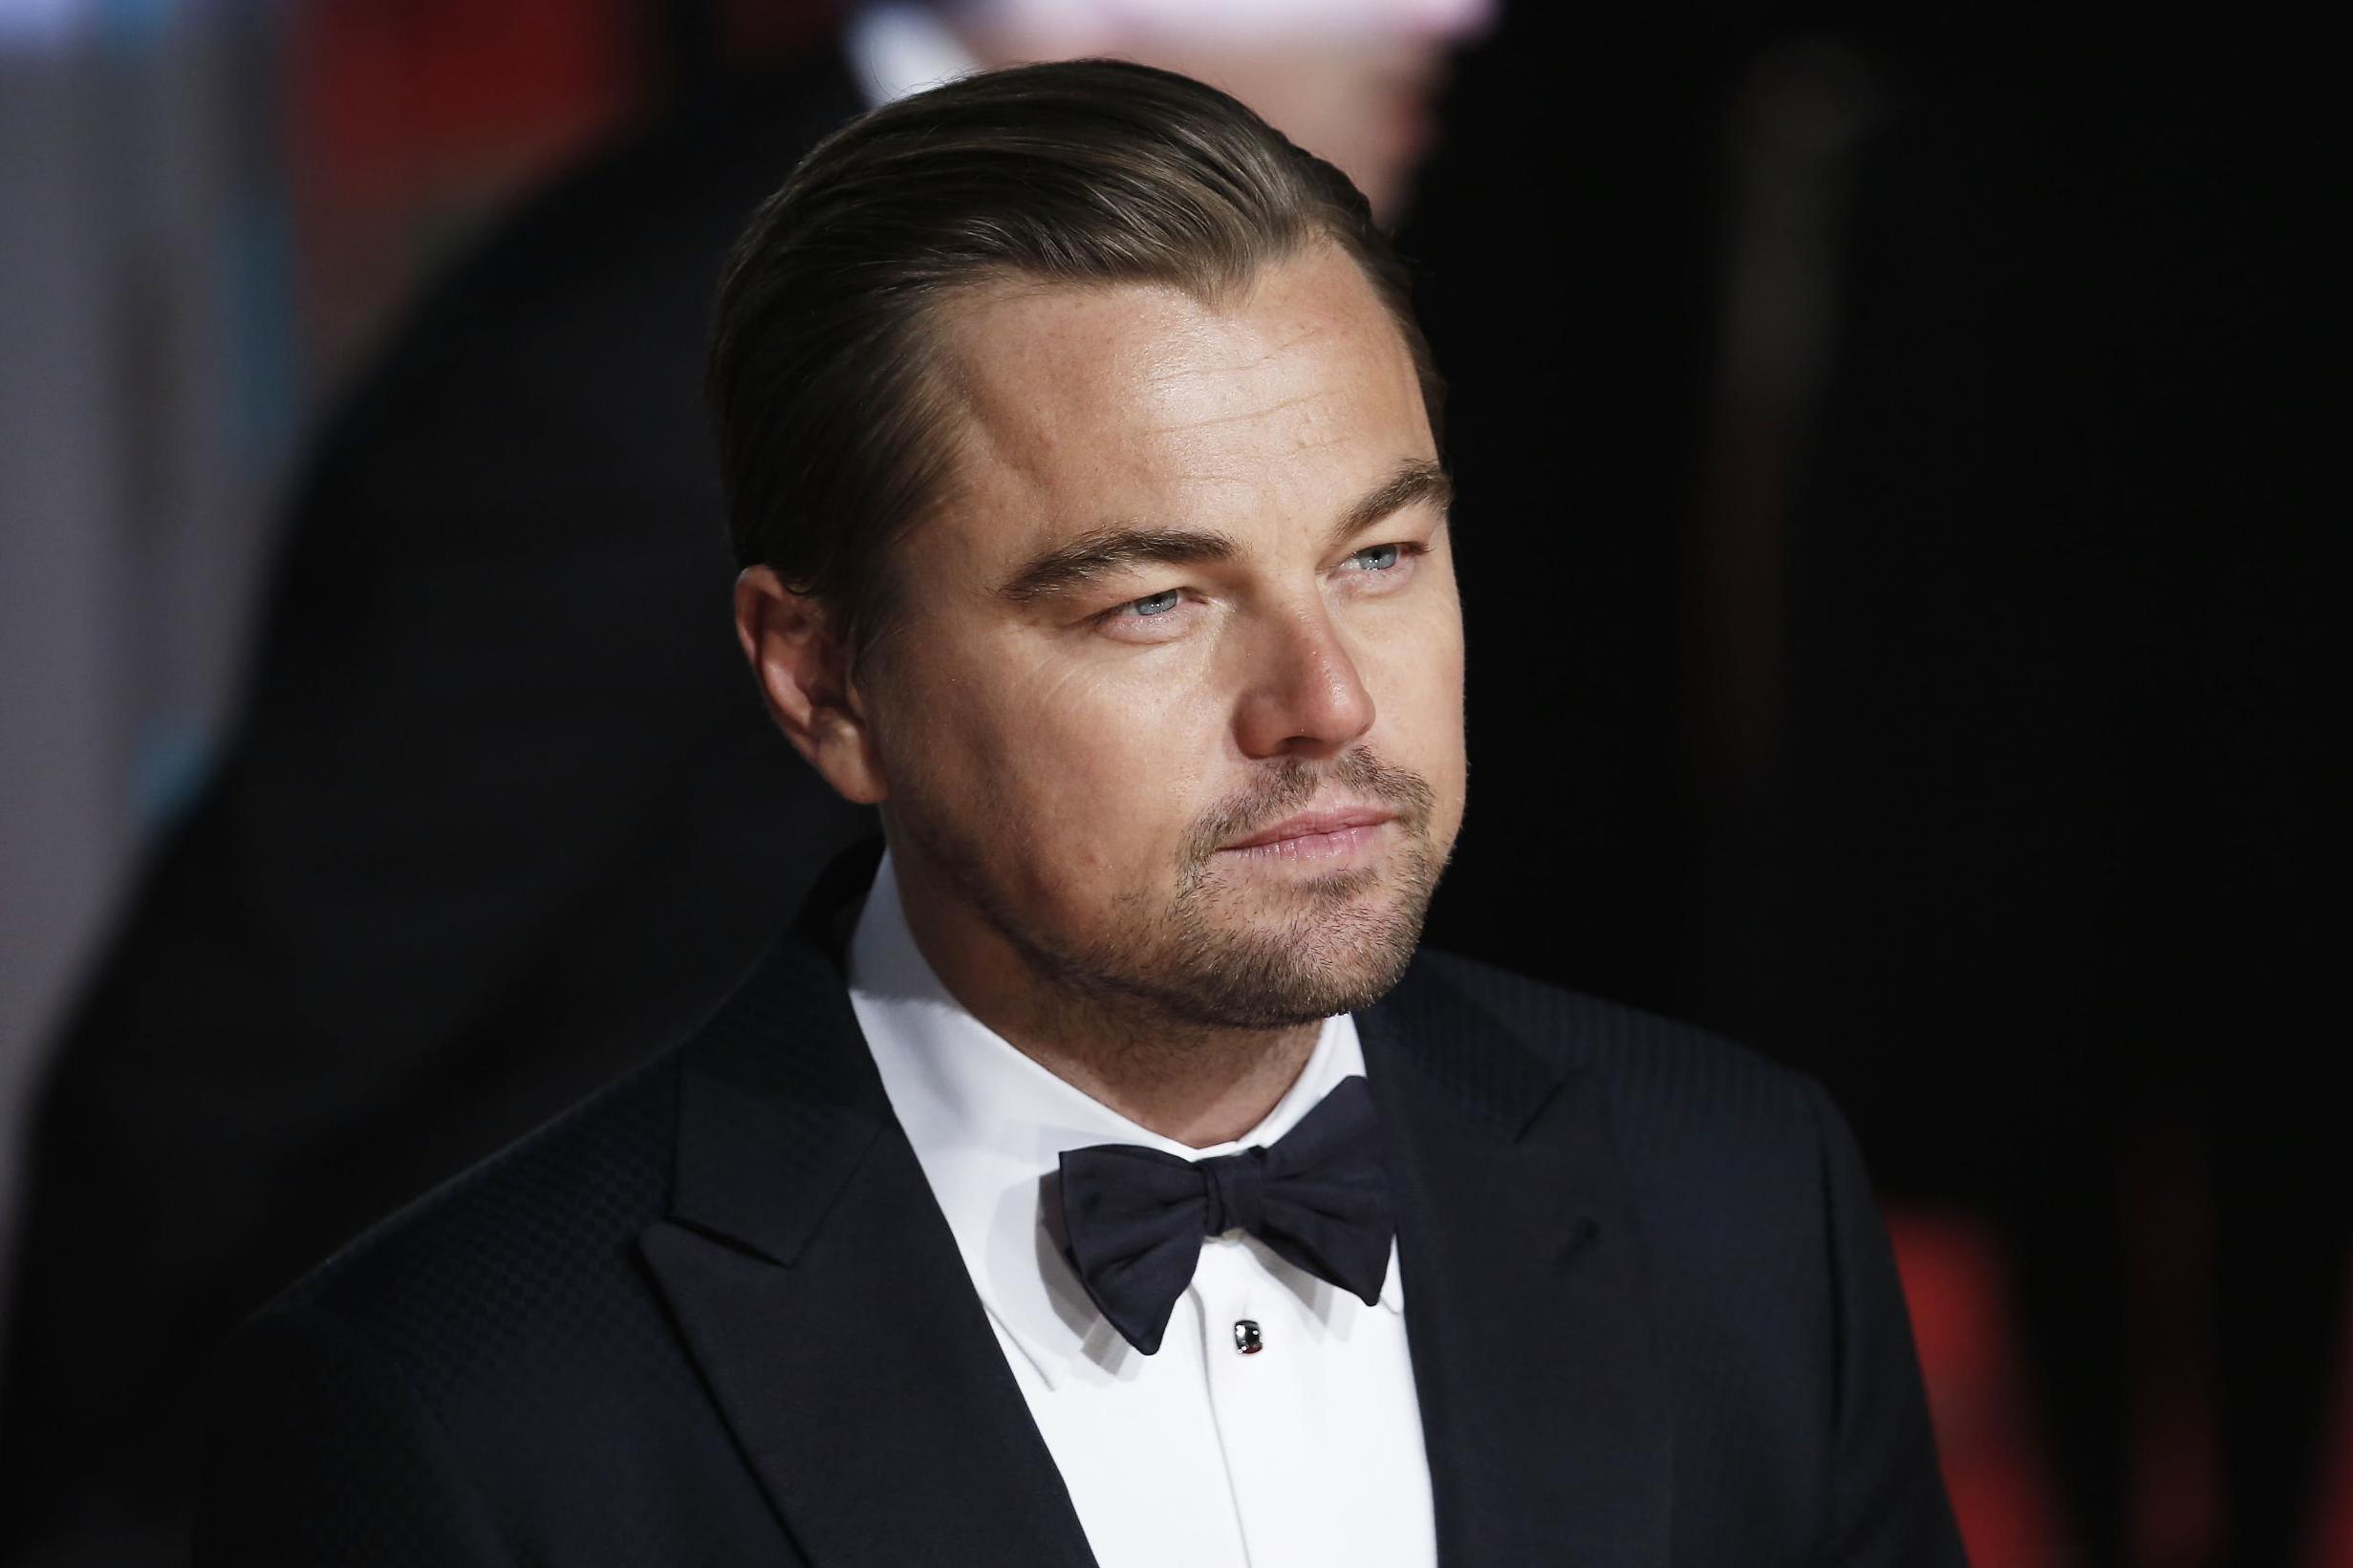 Donasi untuk COVID-19, Leonardo DiCaprio Ajak Penggemar Main Film Bareng